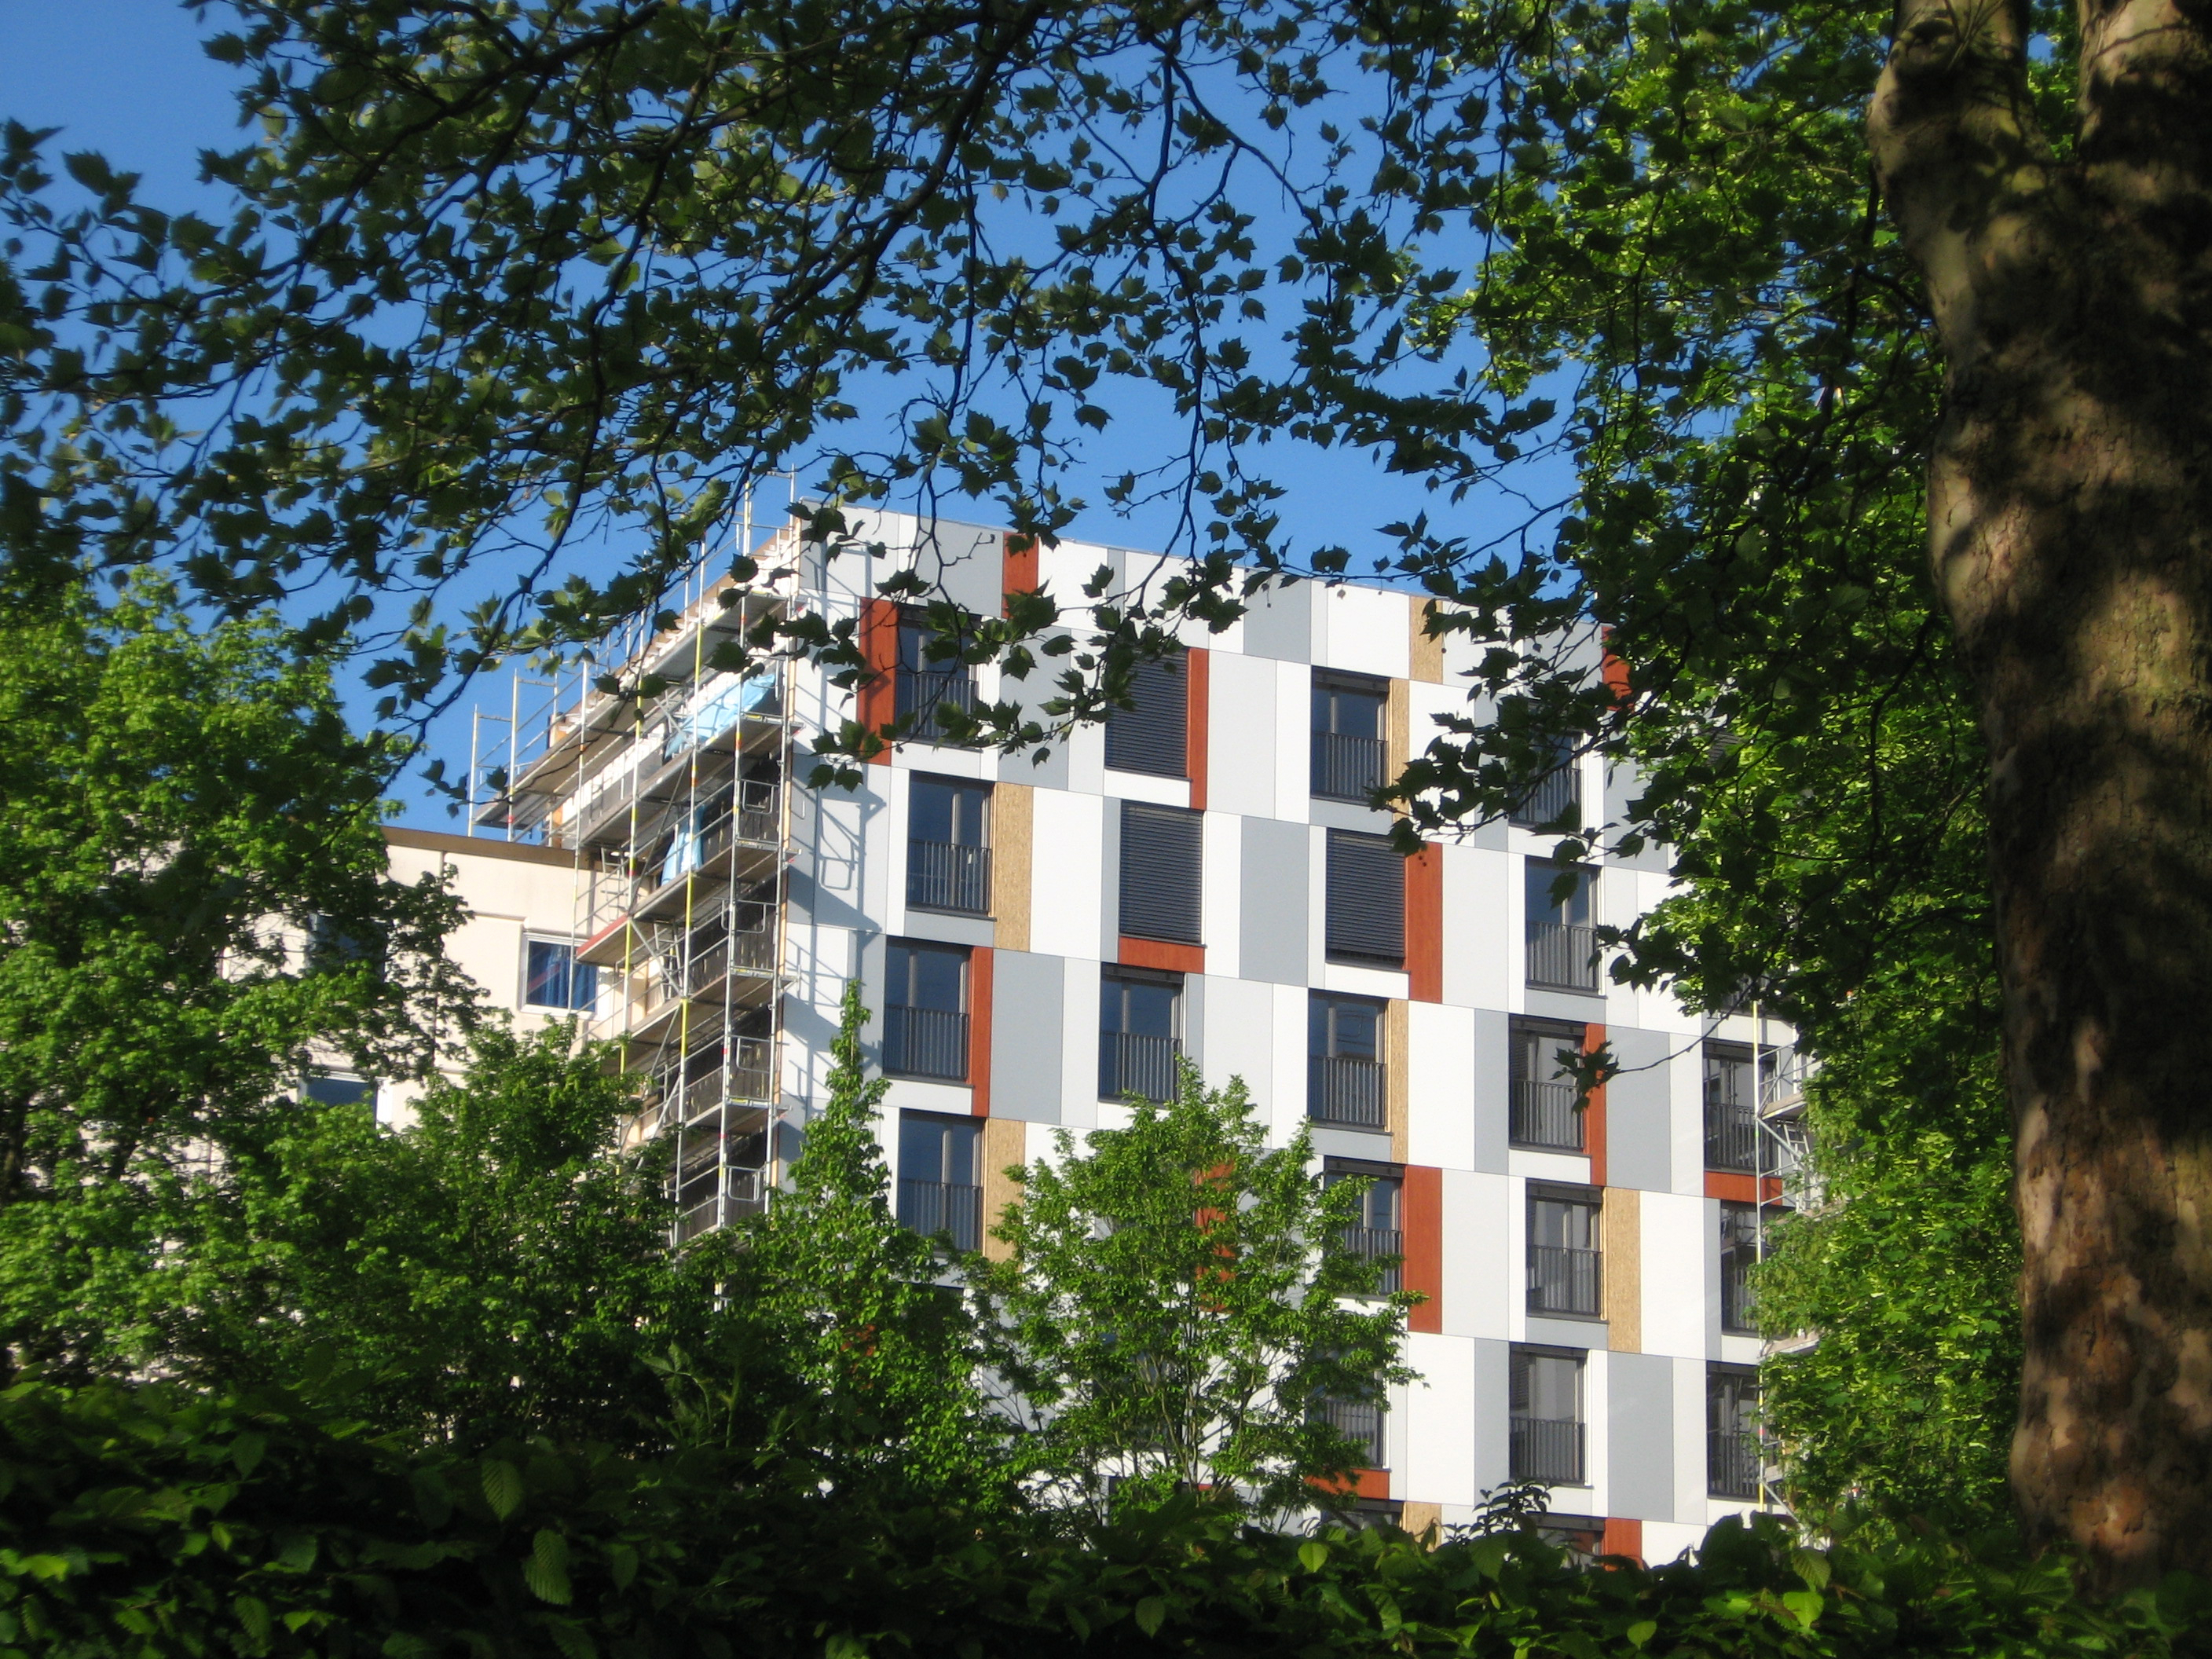 Bild von der Fassade des Studentenwohnheims in Bielefeld: größtenteils ist sie weiß, an den Fenstern gibt es jedoch rechteckige, rot-gelb-graue Elemente.